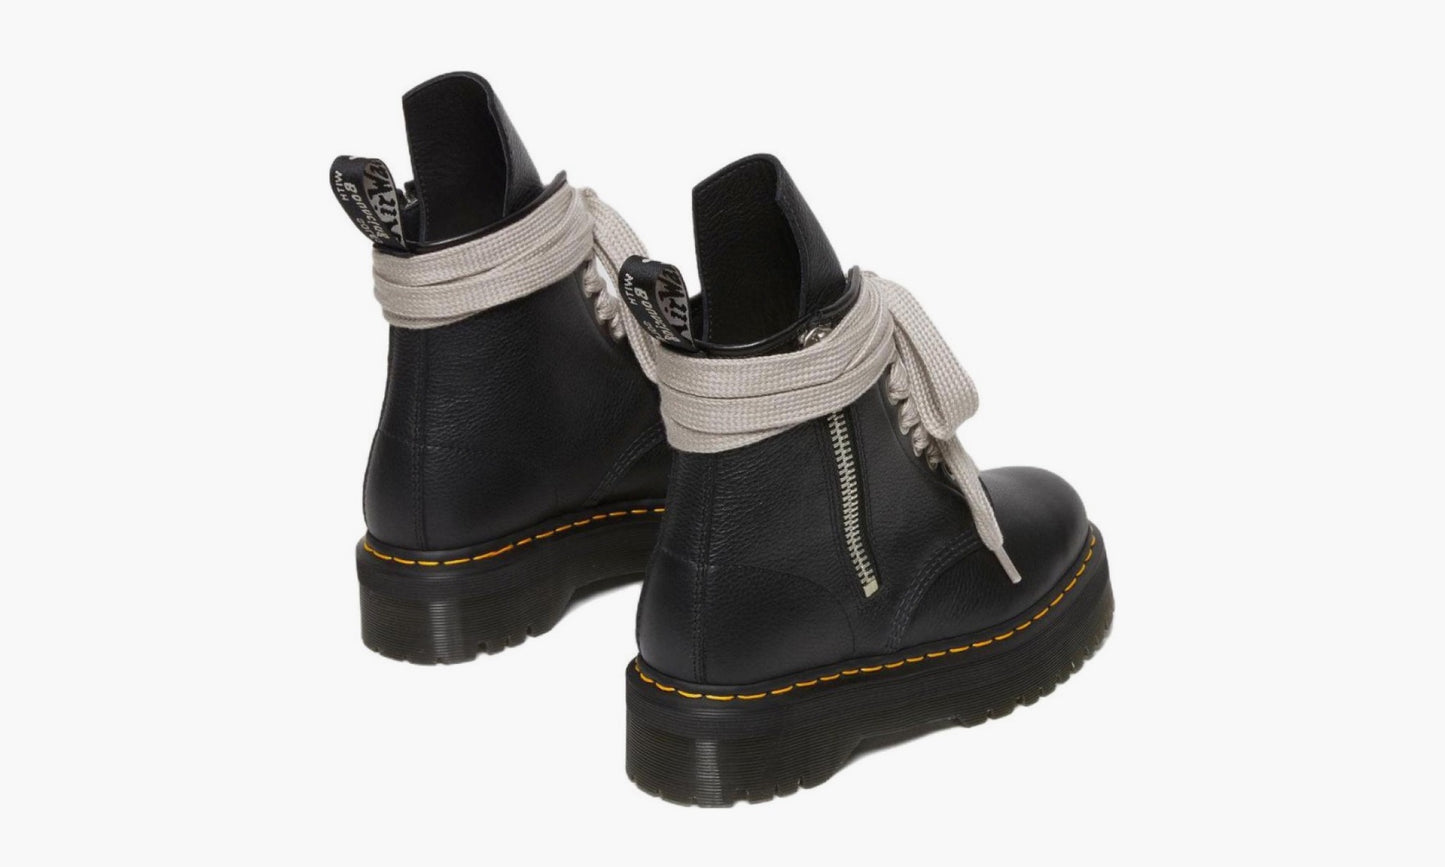 Rick Owens x Dr. Martens 1460 Leather Platform Boots “Black” - 27978001 | Grailshop